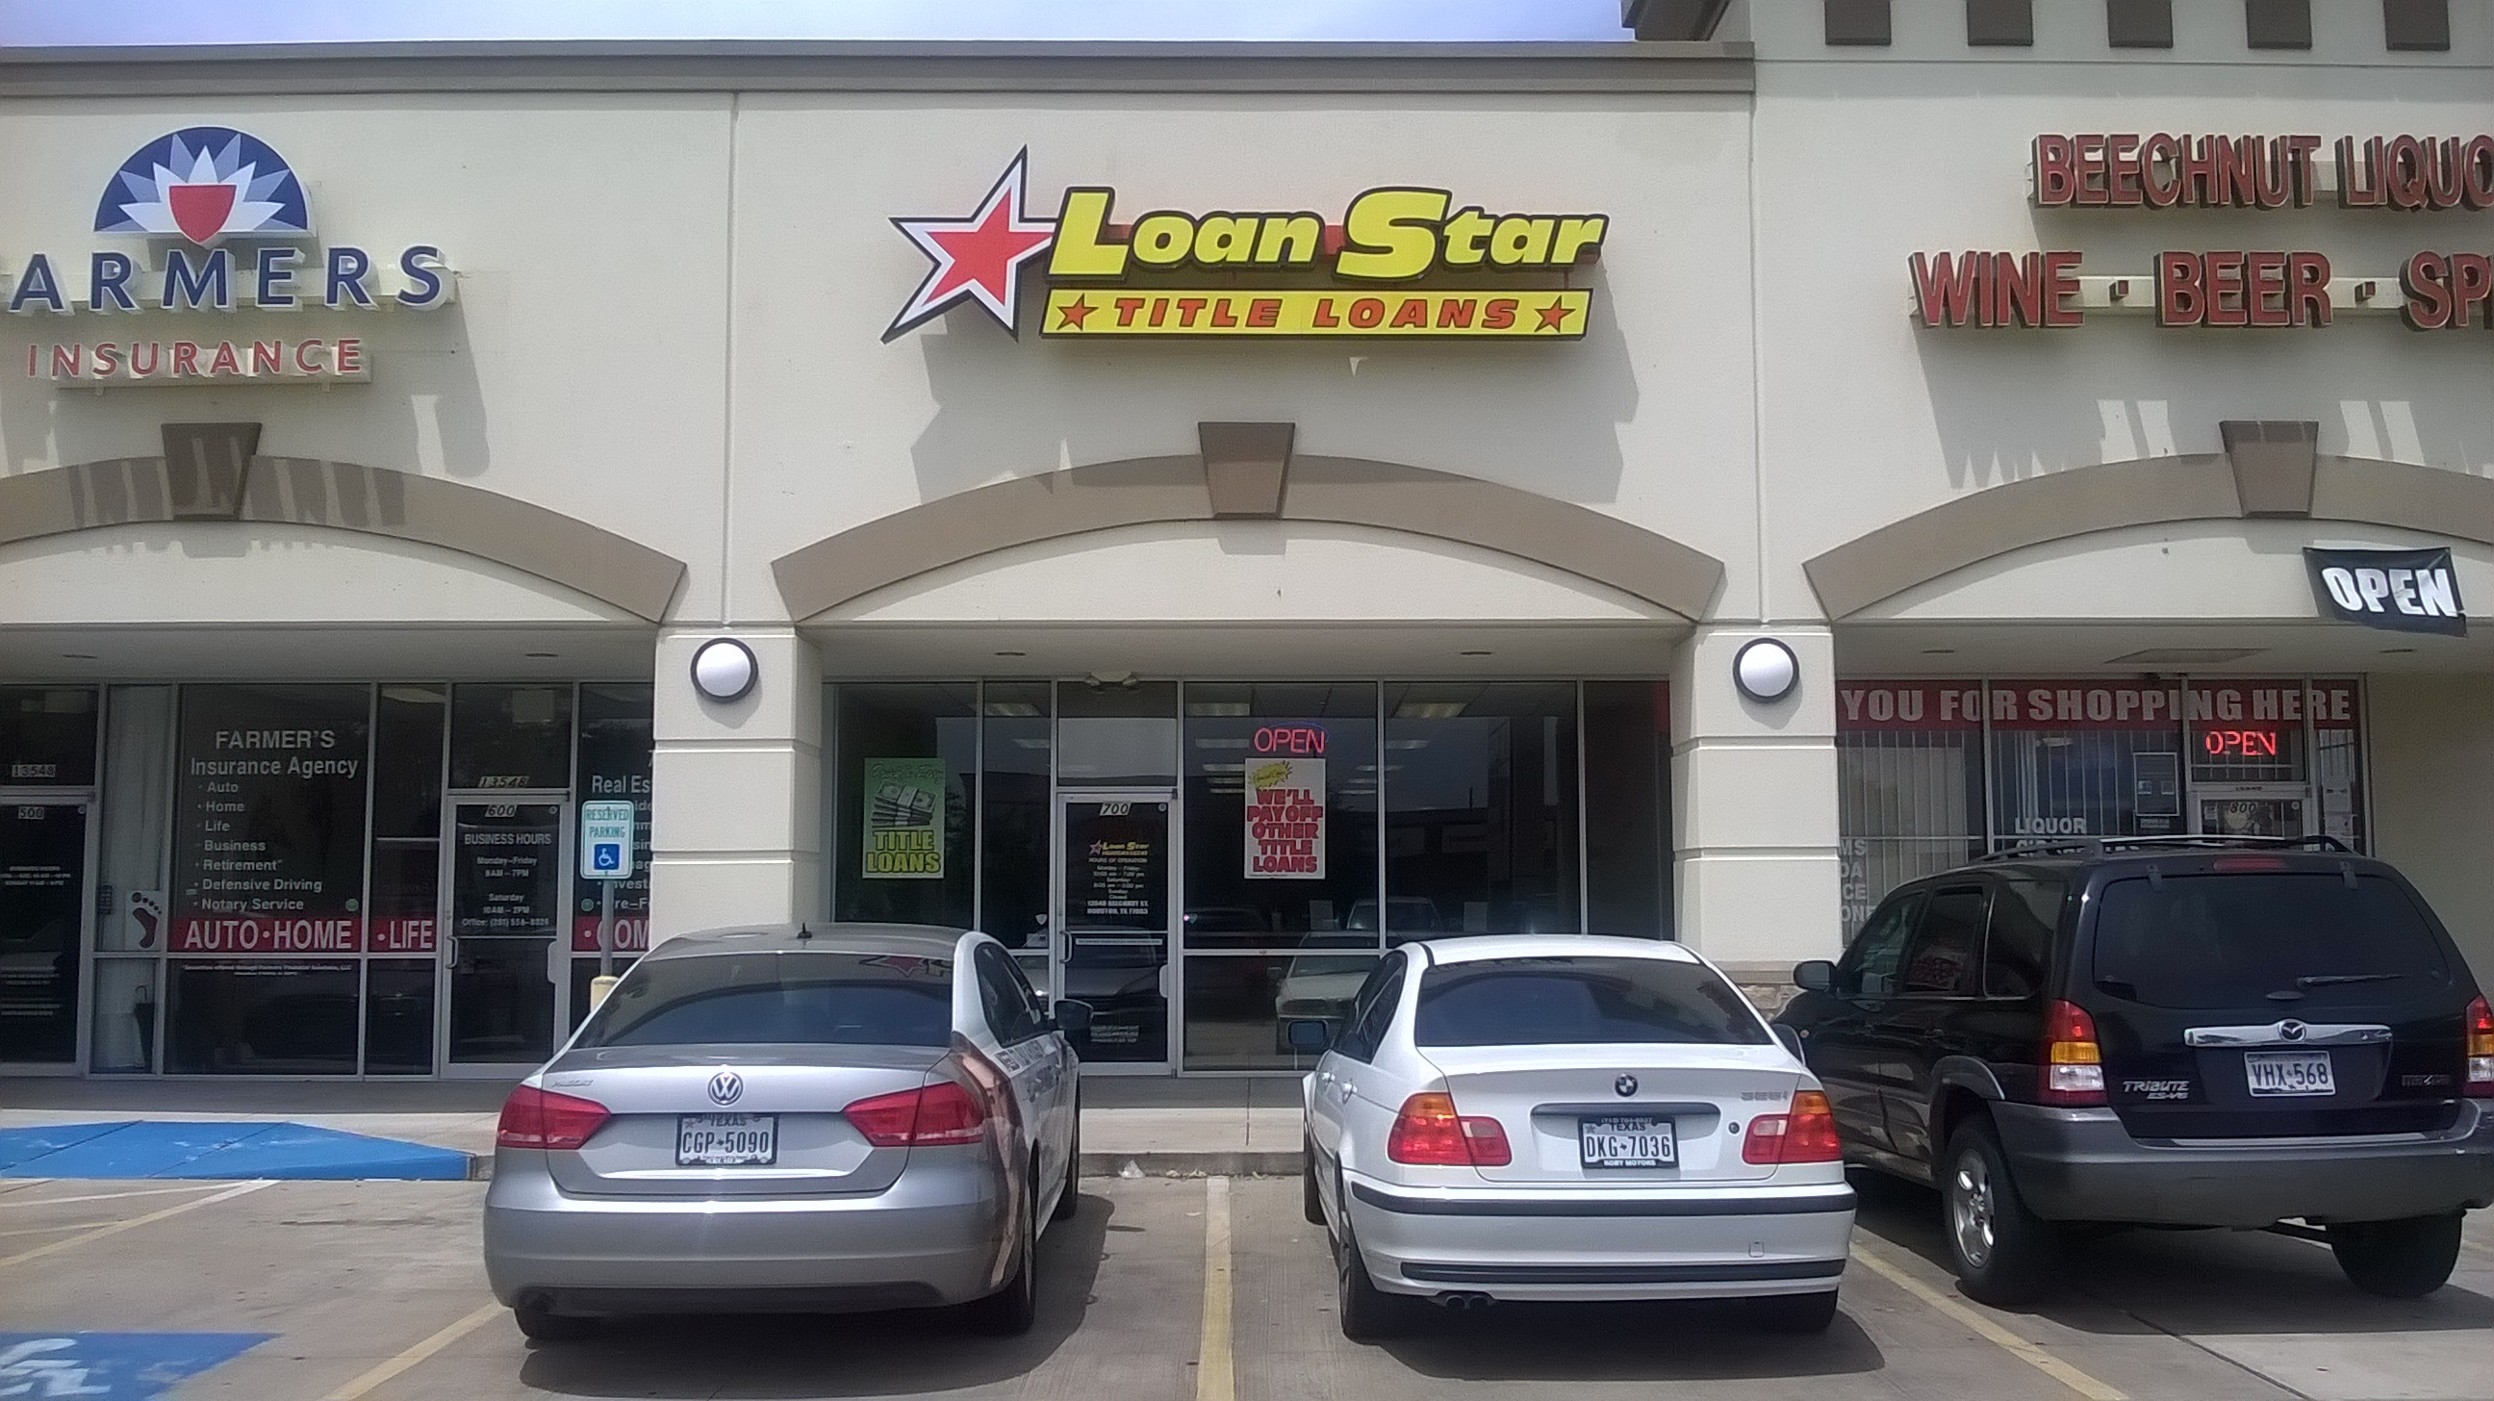 Loanstar Title Loans Photo